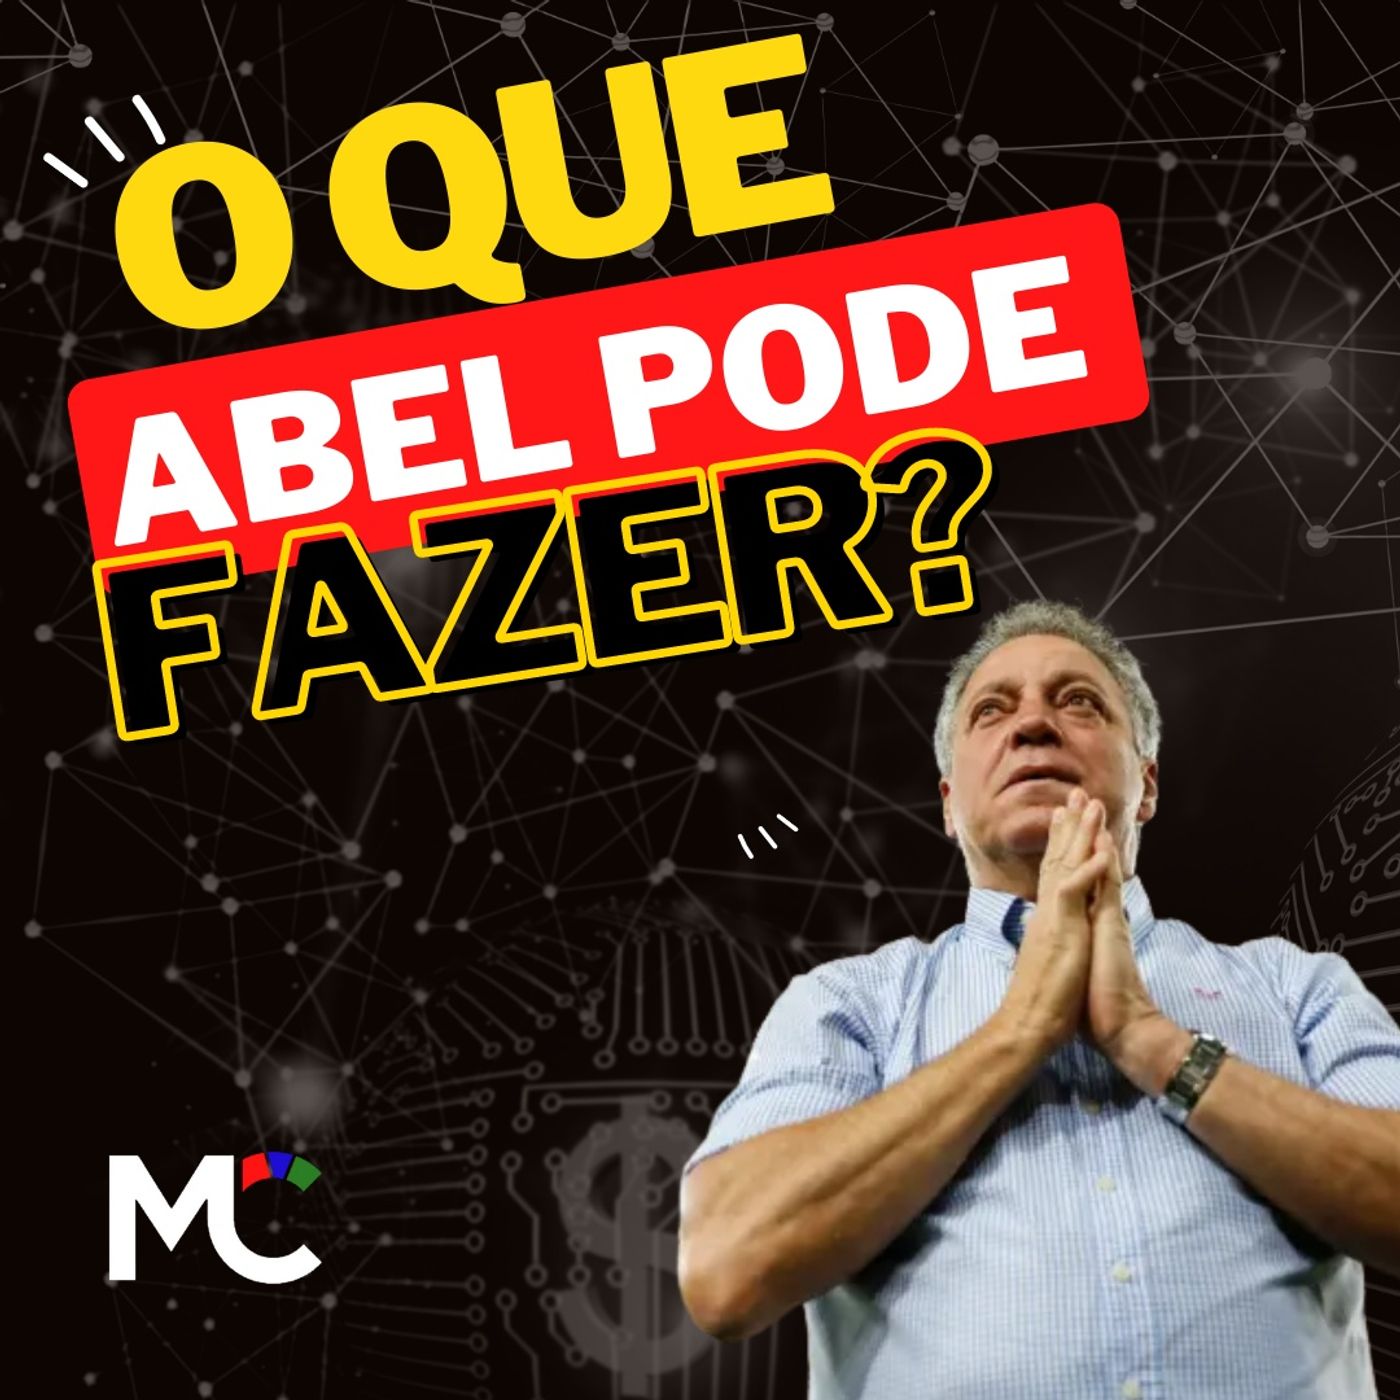 São justas as cobranças da torcida do Fluminense em Abel Braga?